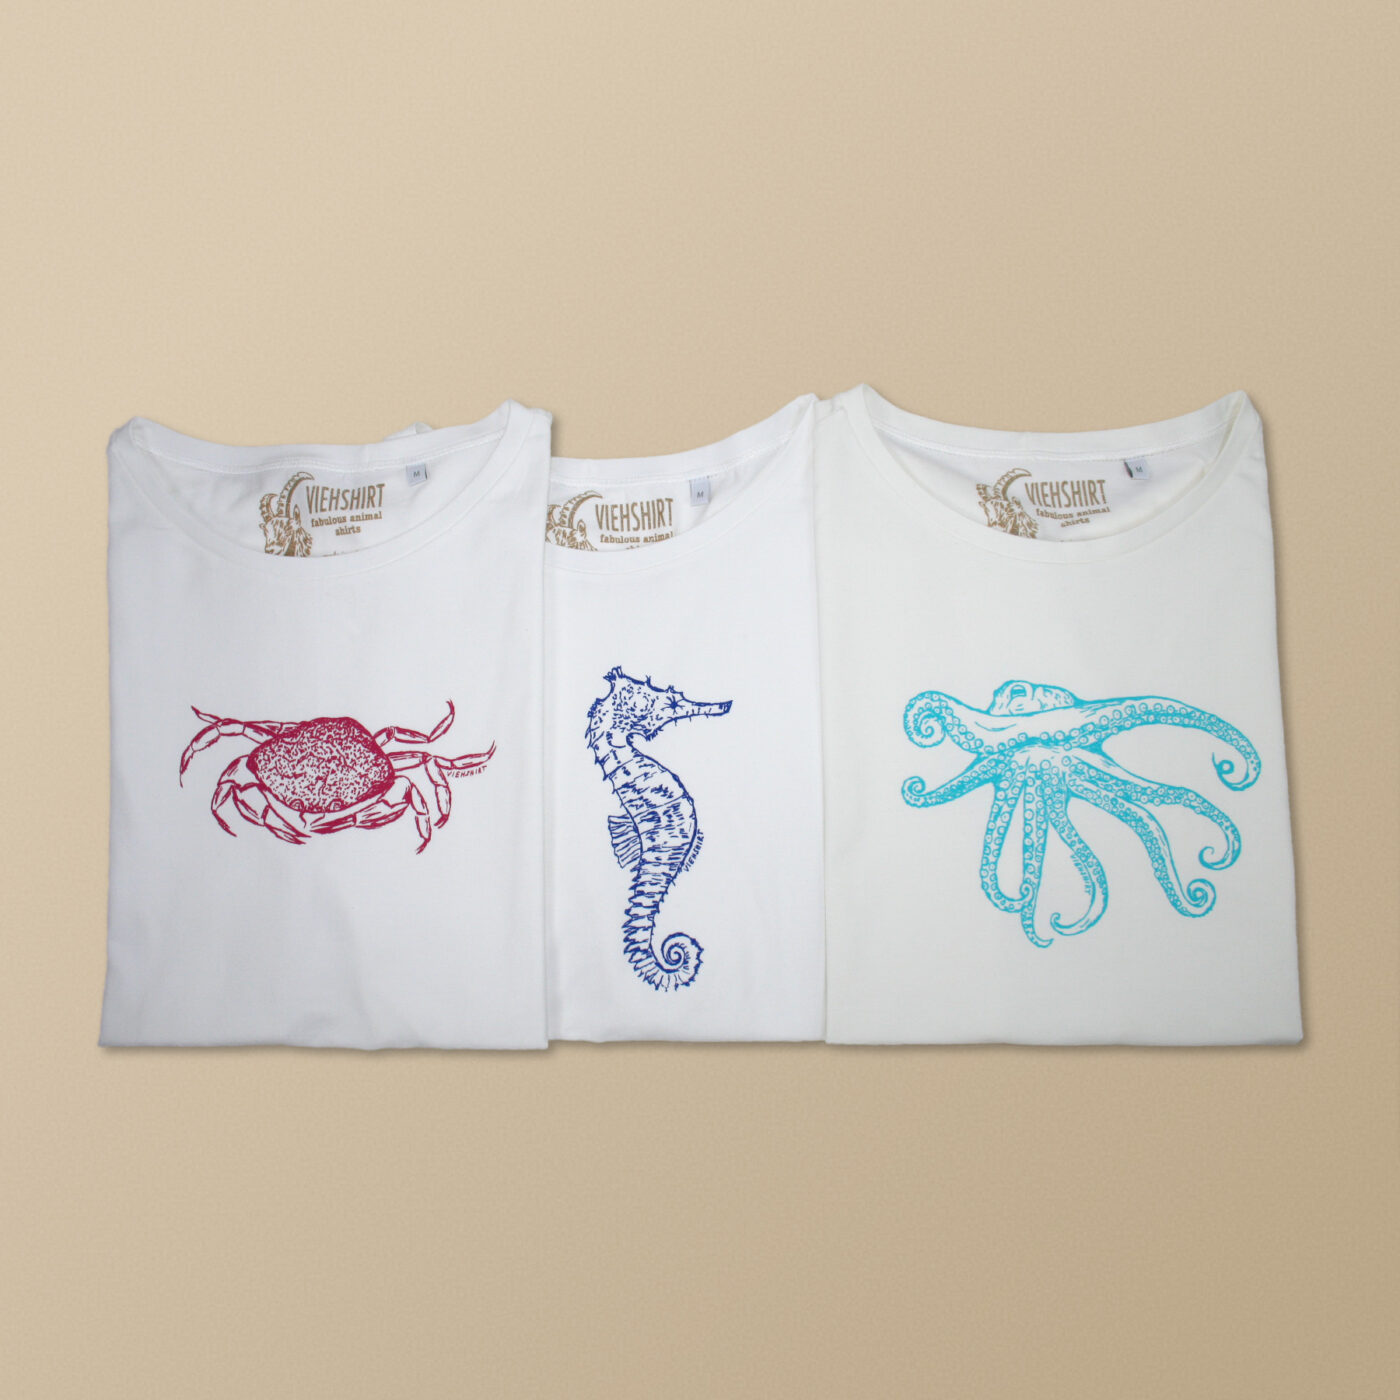 Weiße Viehshirt Damen Shirts mit den Motiven: Krebs, Seestern und Oktopus